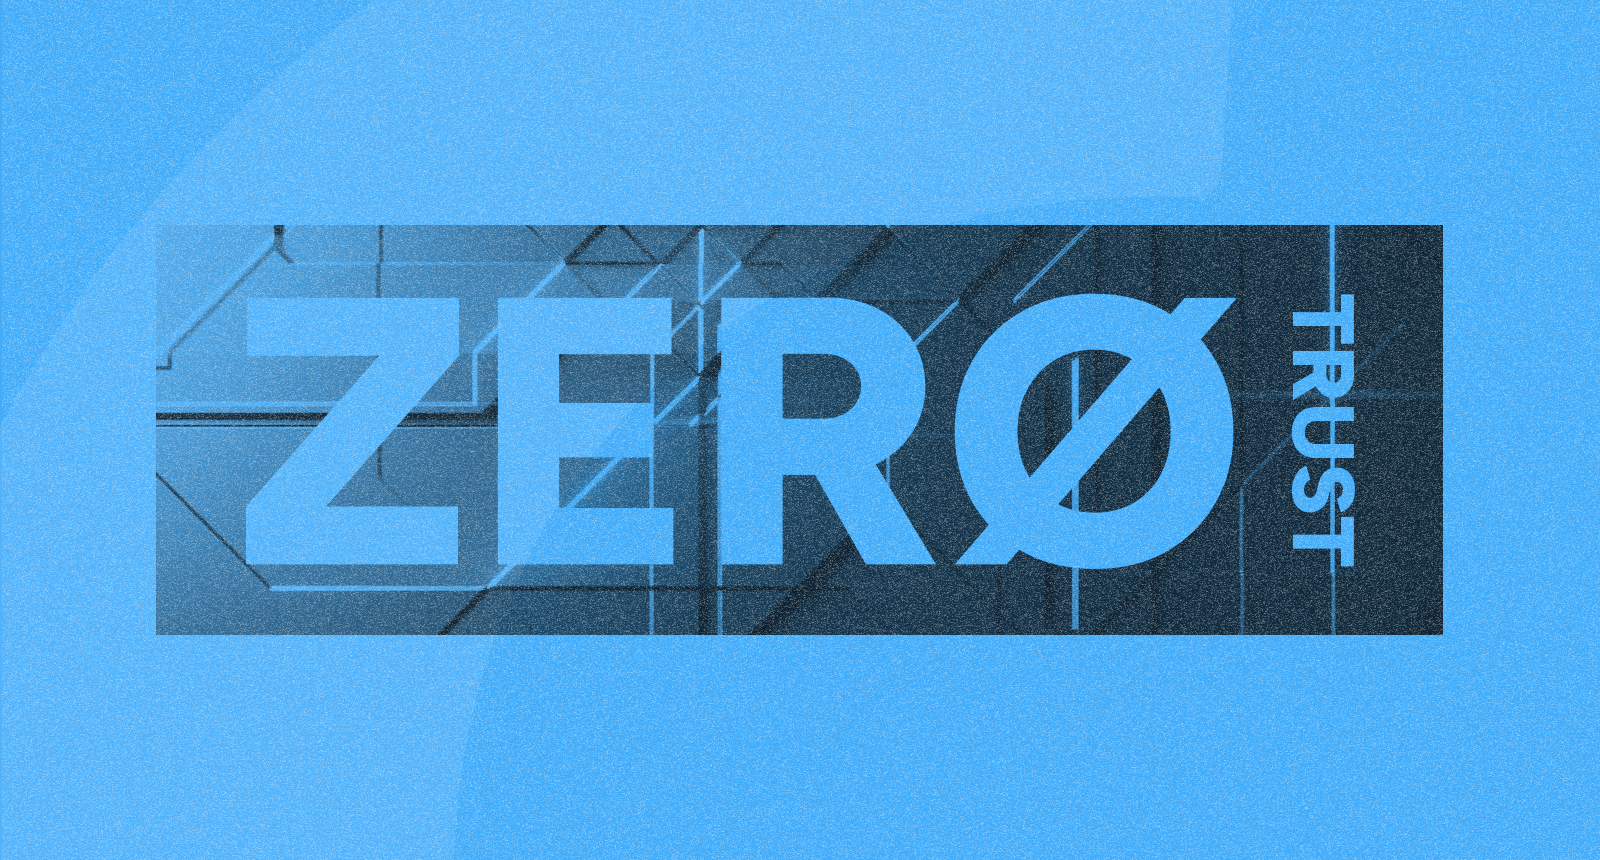 Confianza cero (zero trust): un modelo eficaz de reducción de riesgos para empresas y negocios